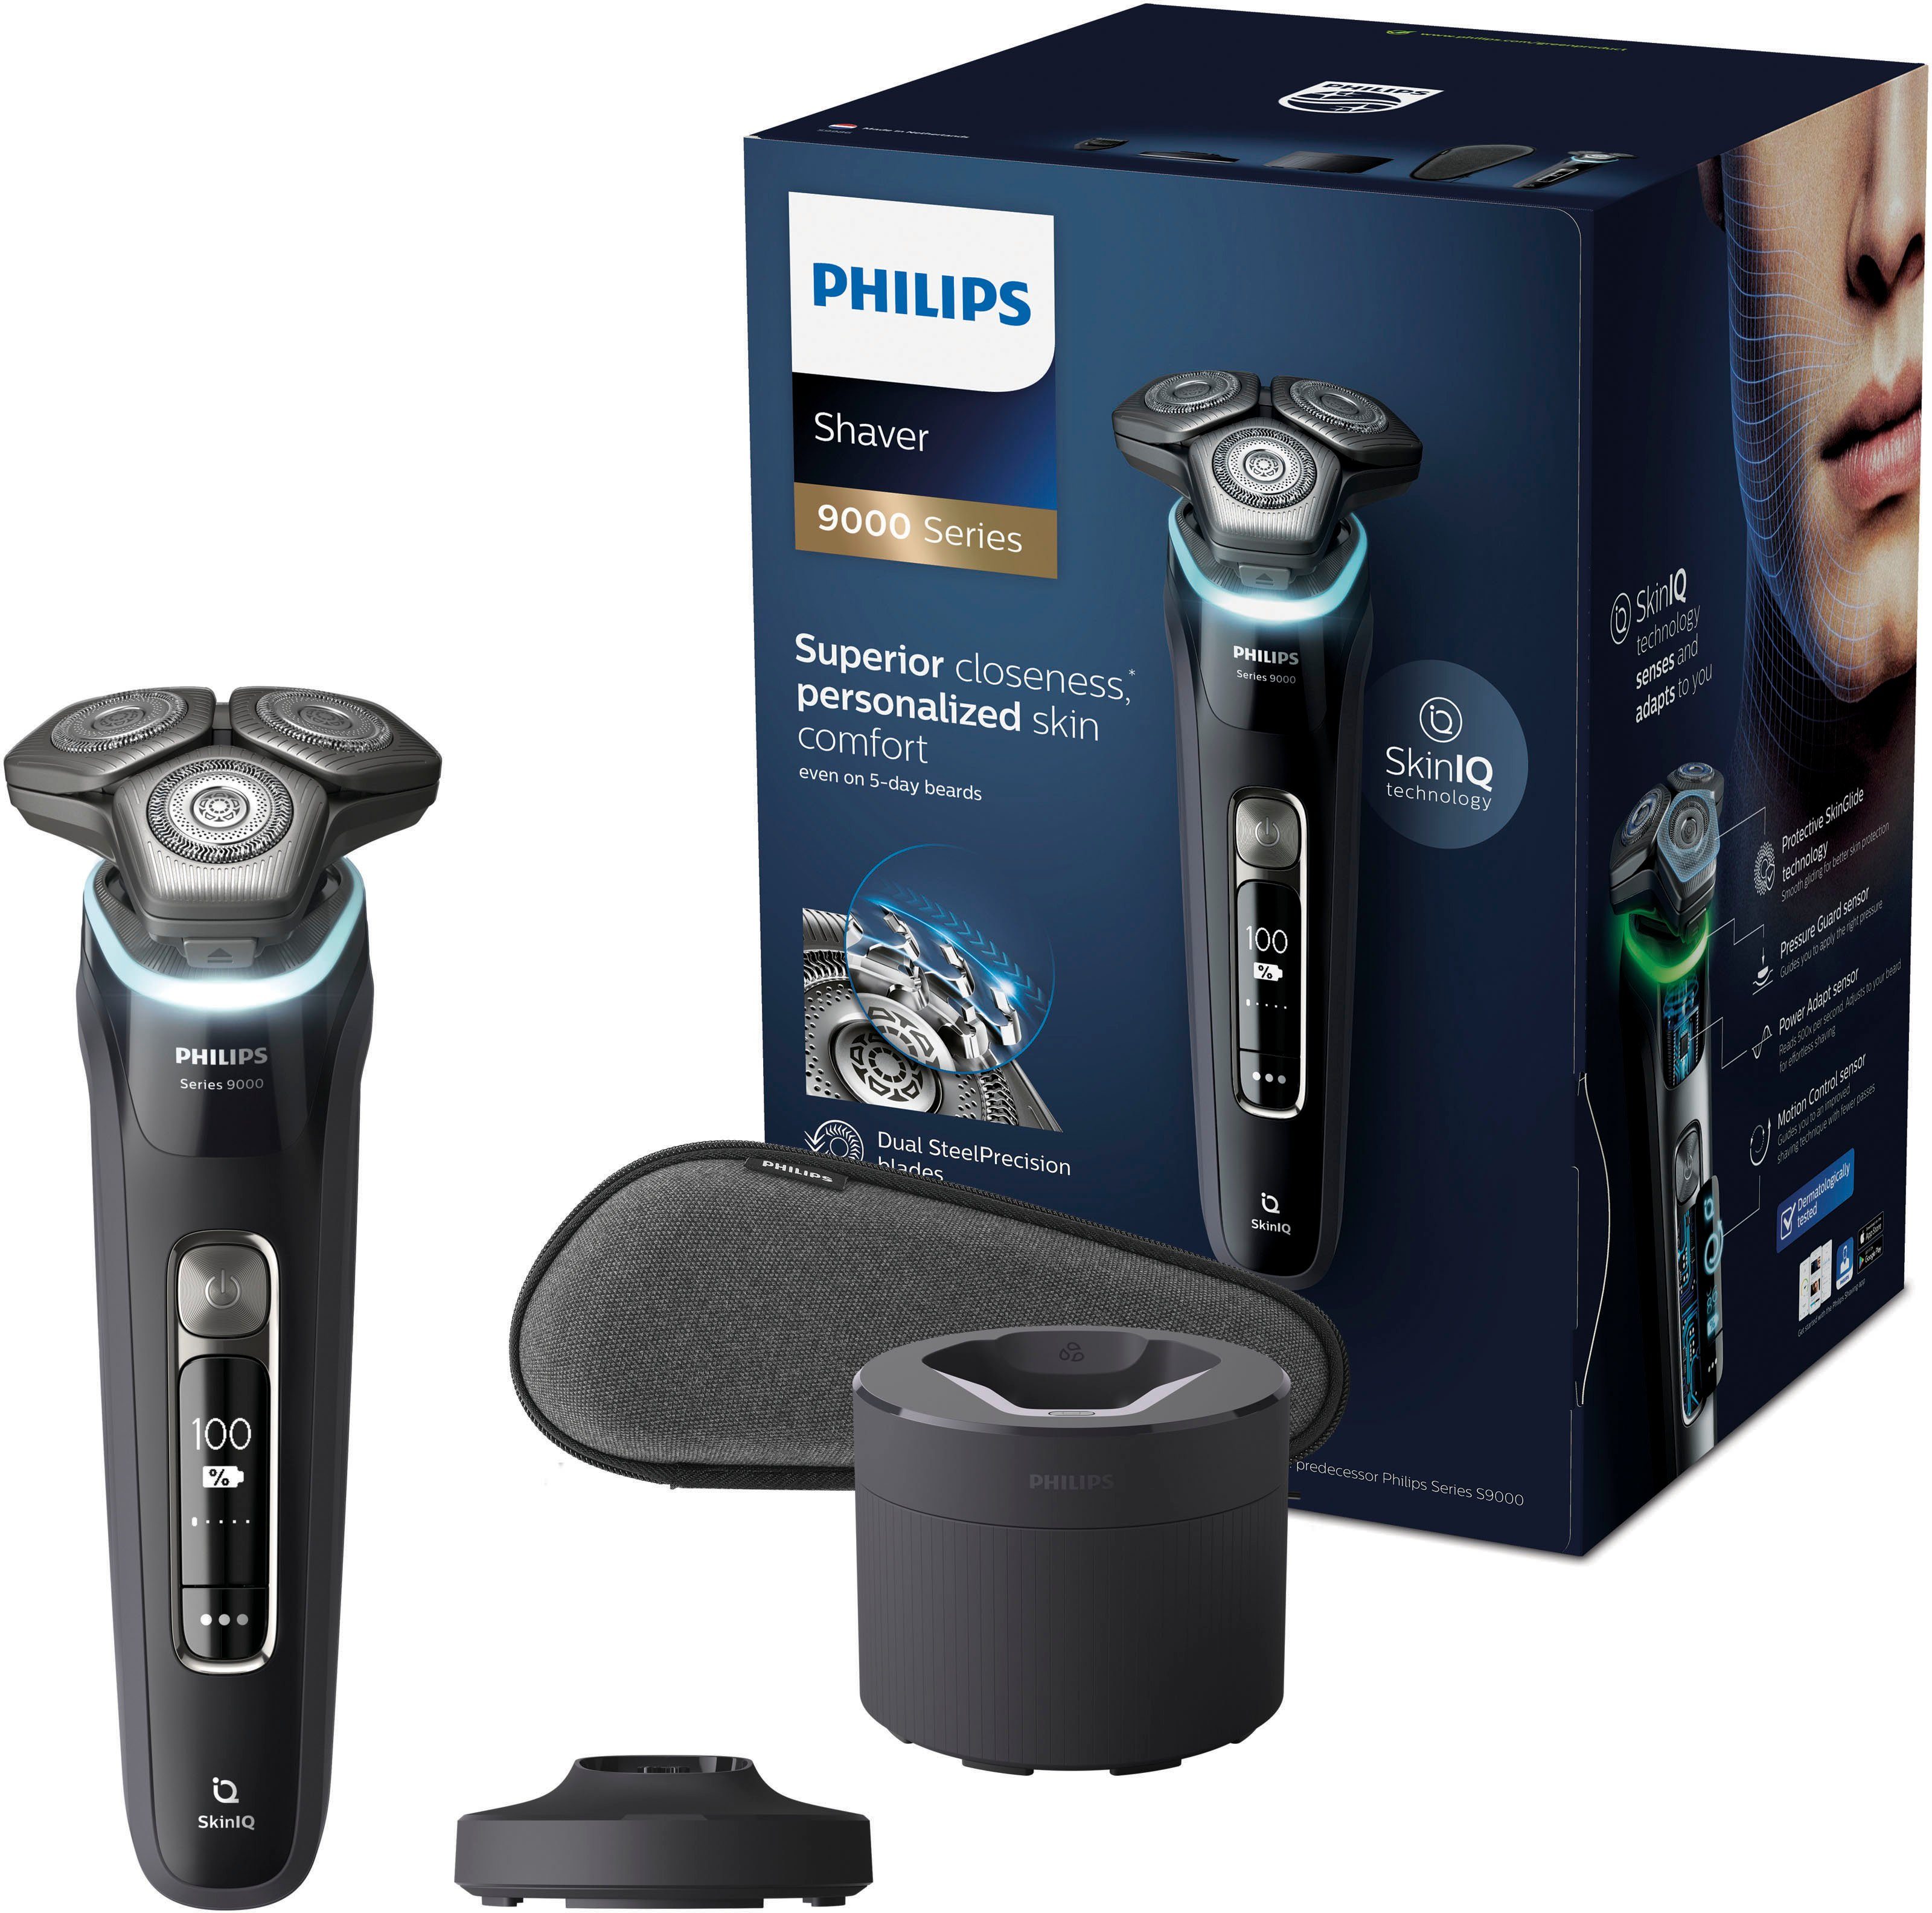 Philips Elektrorasierer Series 9000 S9986/55, Reinigungsstation, mit Skin IQ Technologie, inkl. Reinigungsstation, Ladestand und Etui | Haarschneider